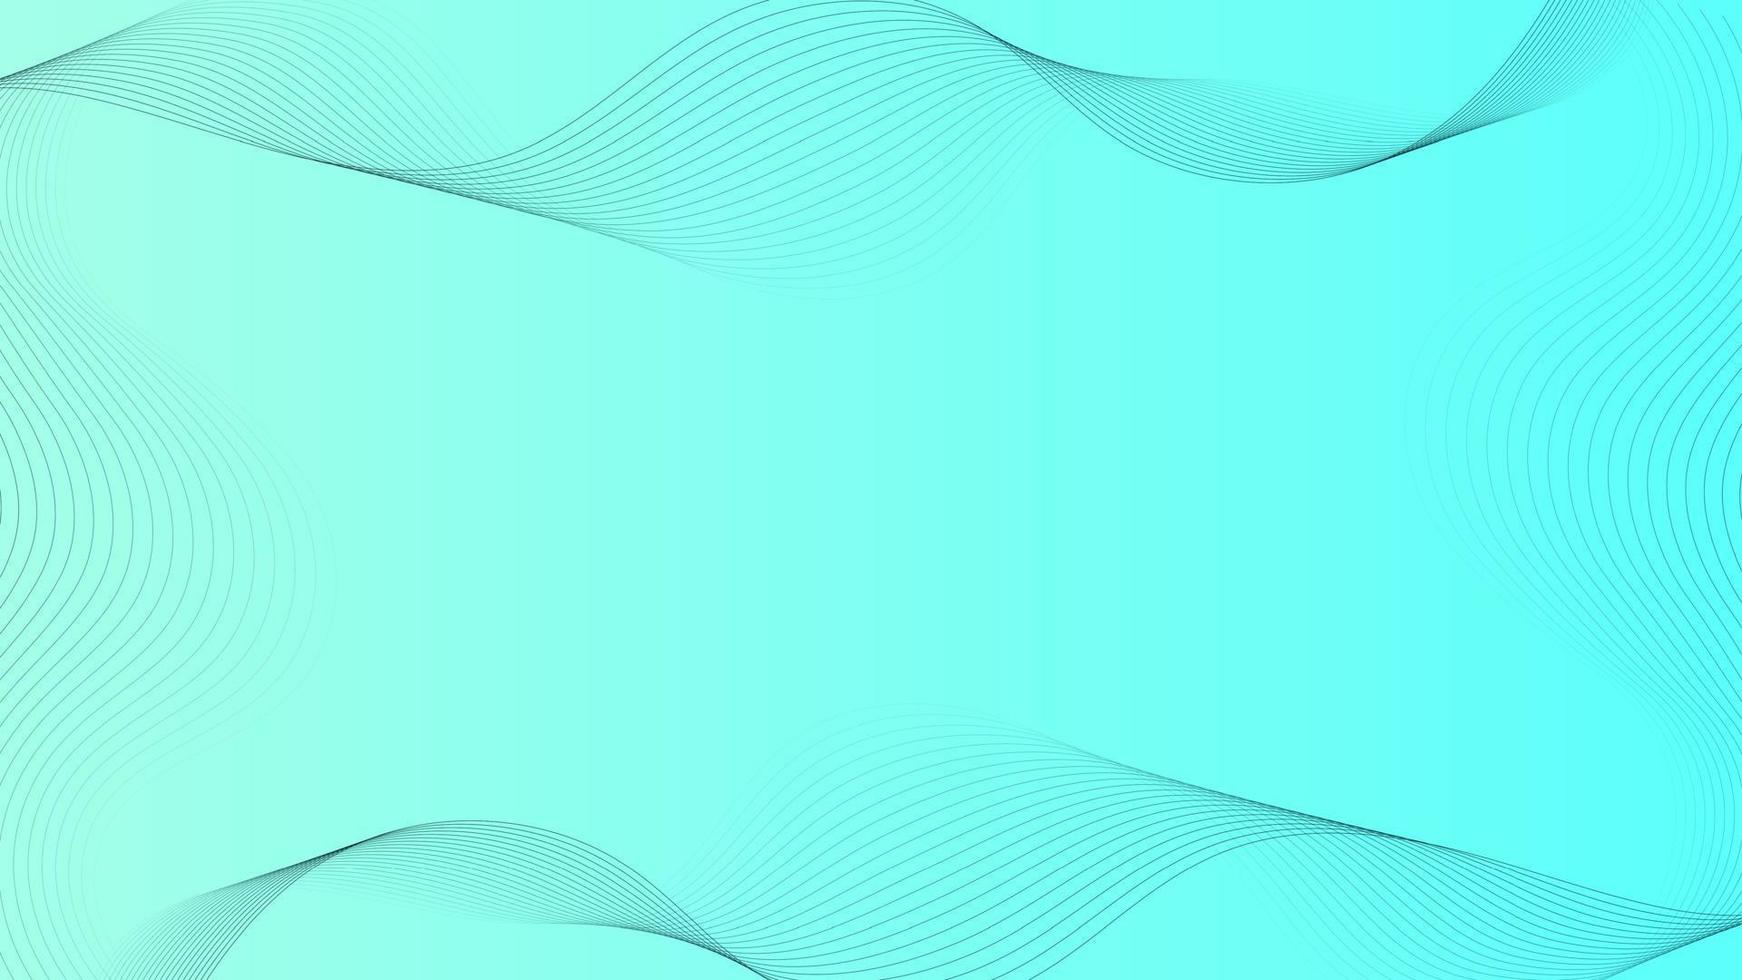 svart rader på blå abstrakt bakgrund med strömmande partiklar. digital framtida teknologi begrepp. vektor illustration.